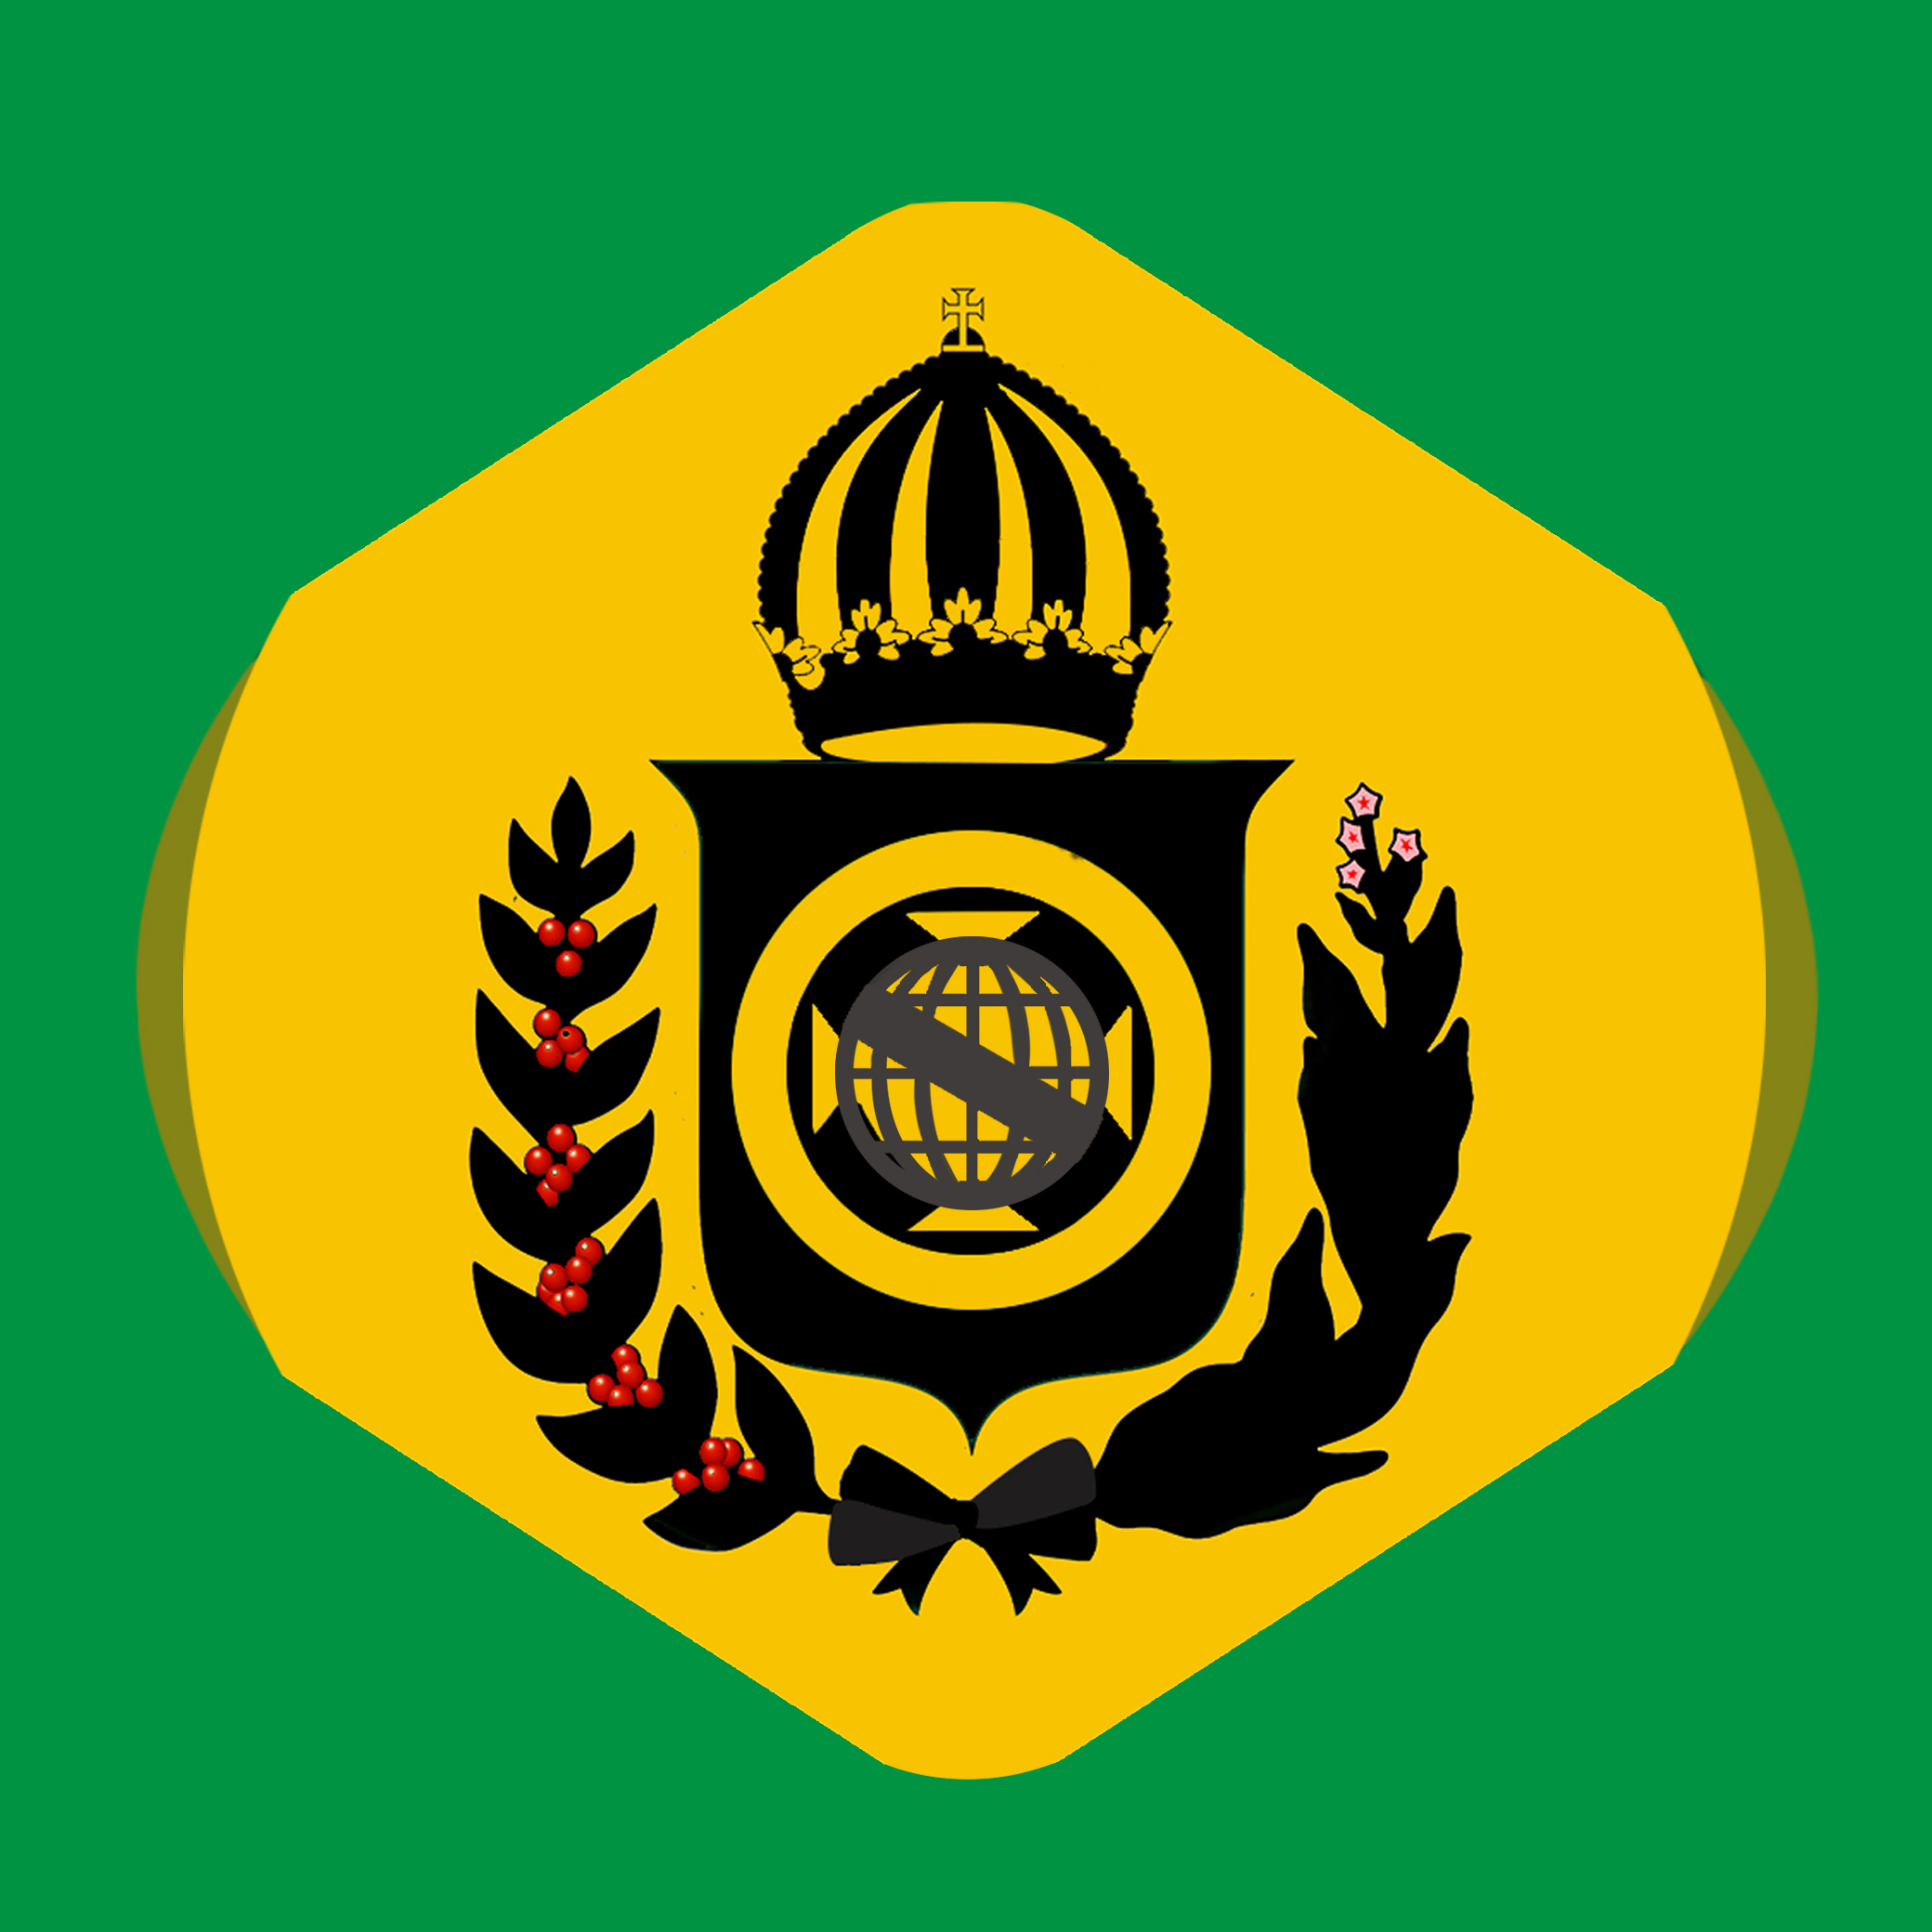 Bandeira do Império Brasileiro Minimalista by Serafin